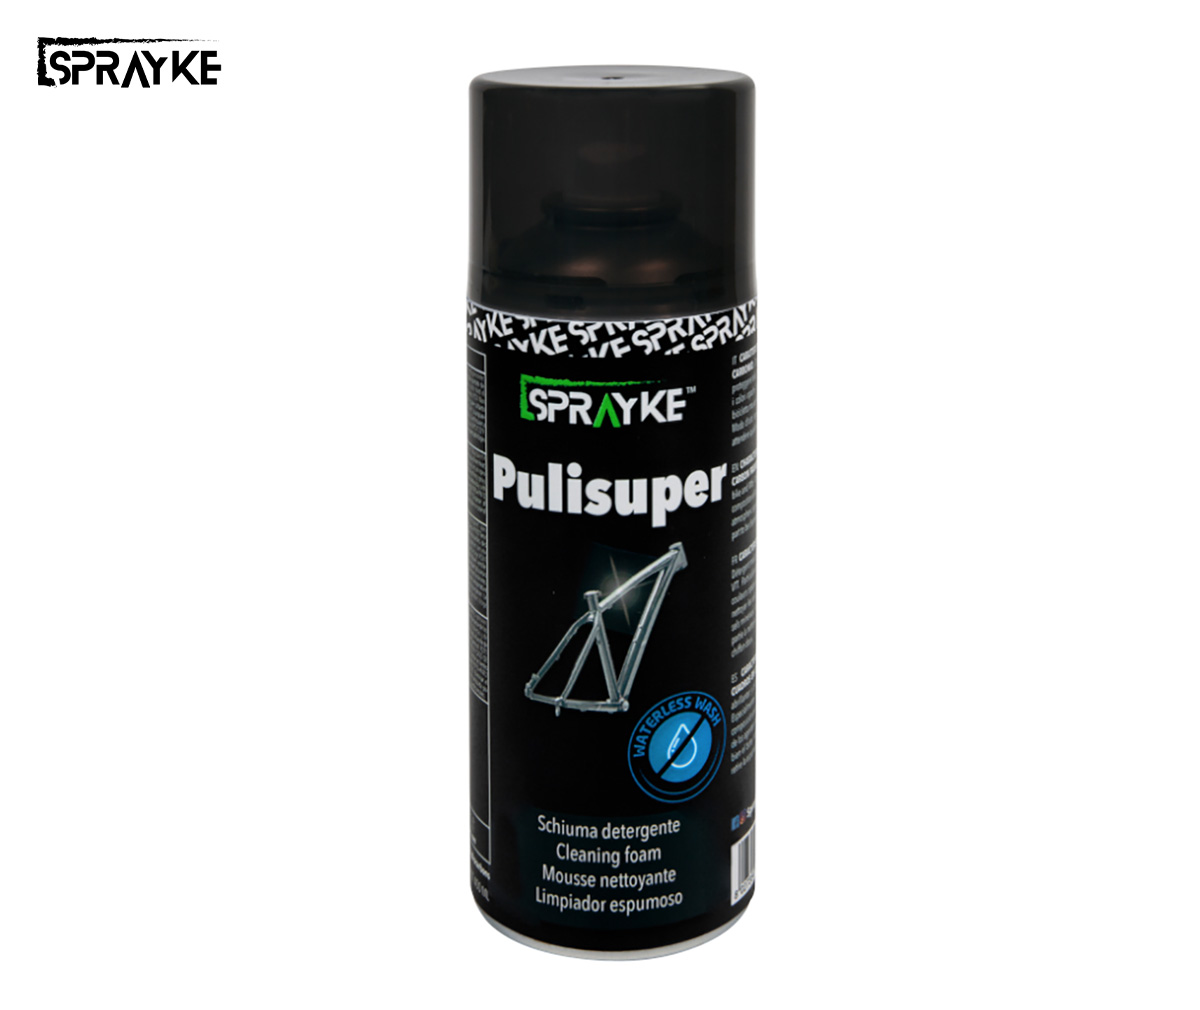 Il prodotto per la pulizia della bici Sprayke Pulisuper